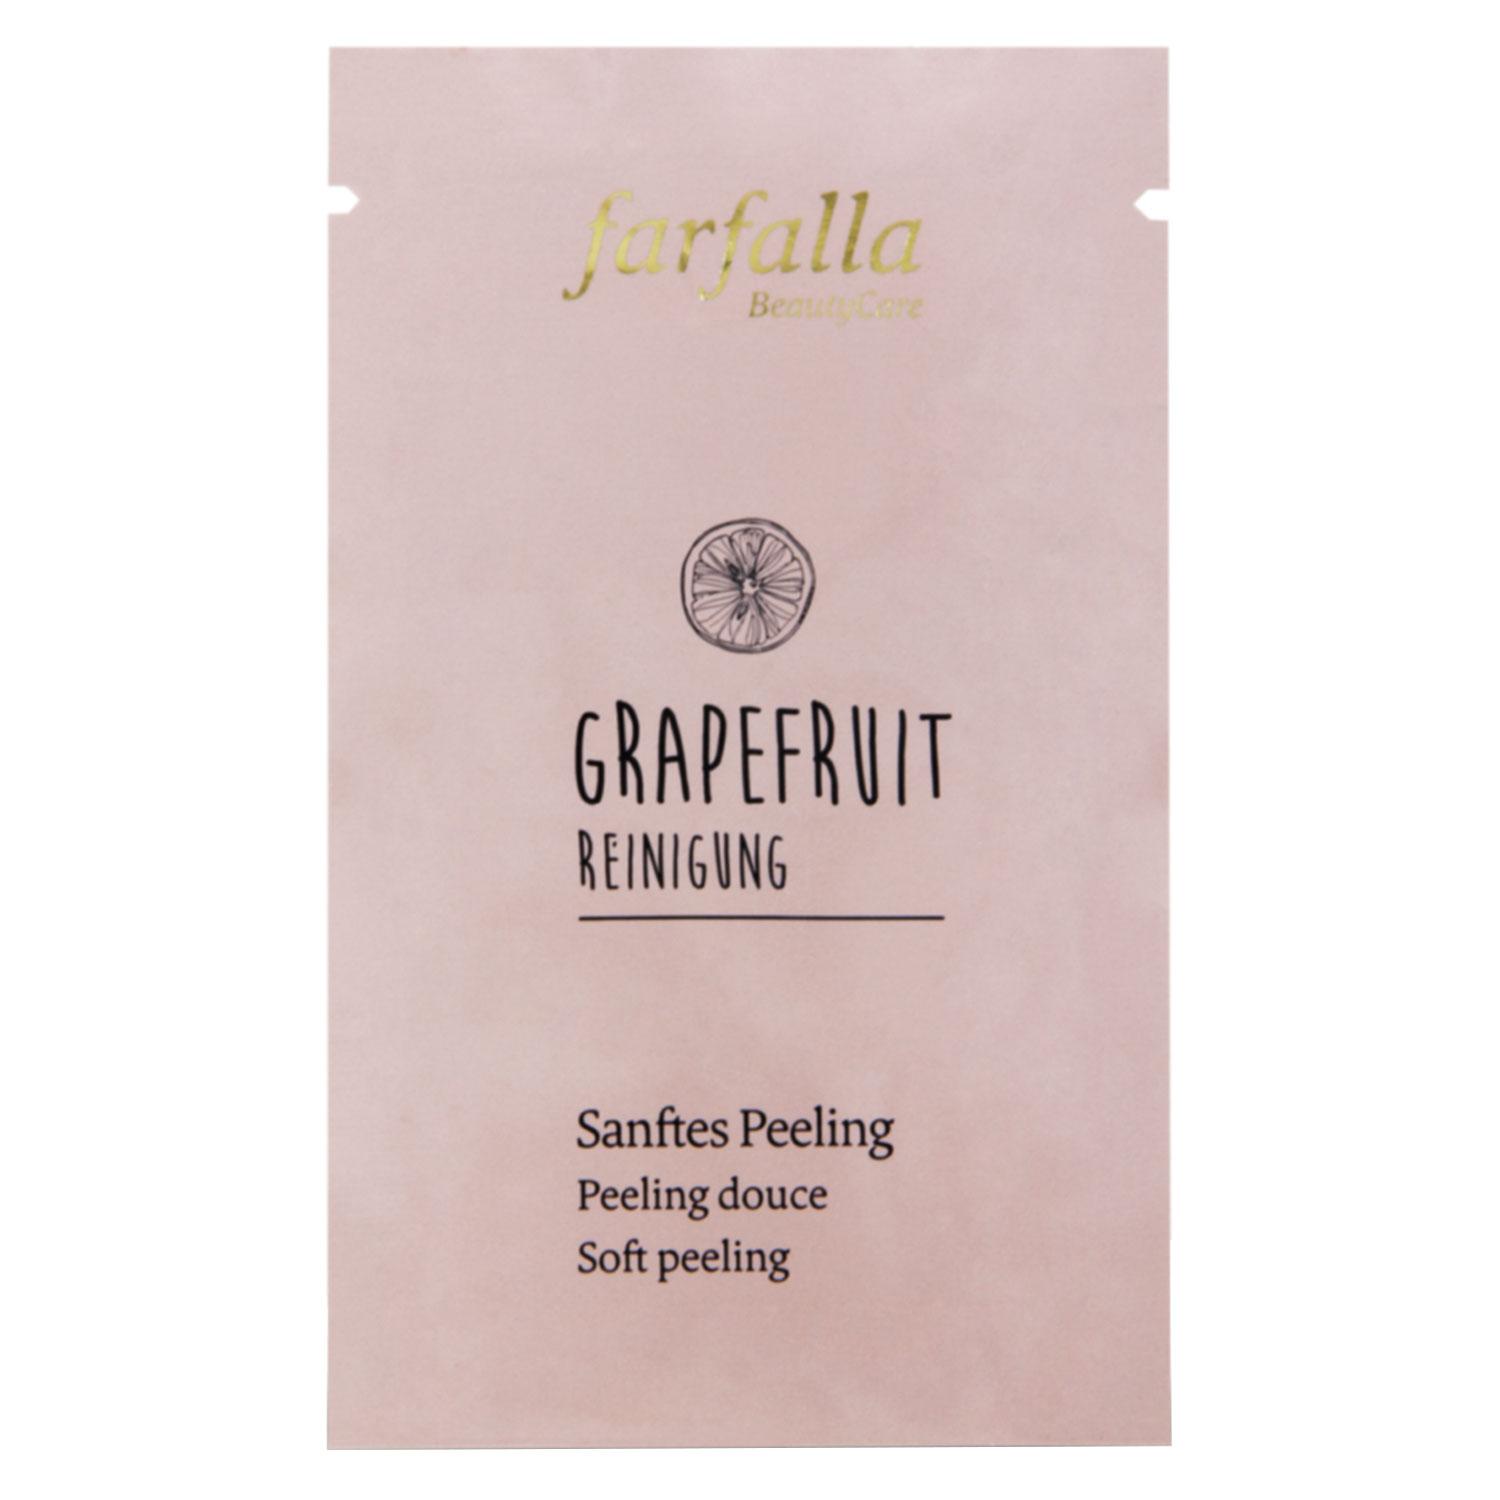 Grapefruit Reinigung - Sanftes Peeling